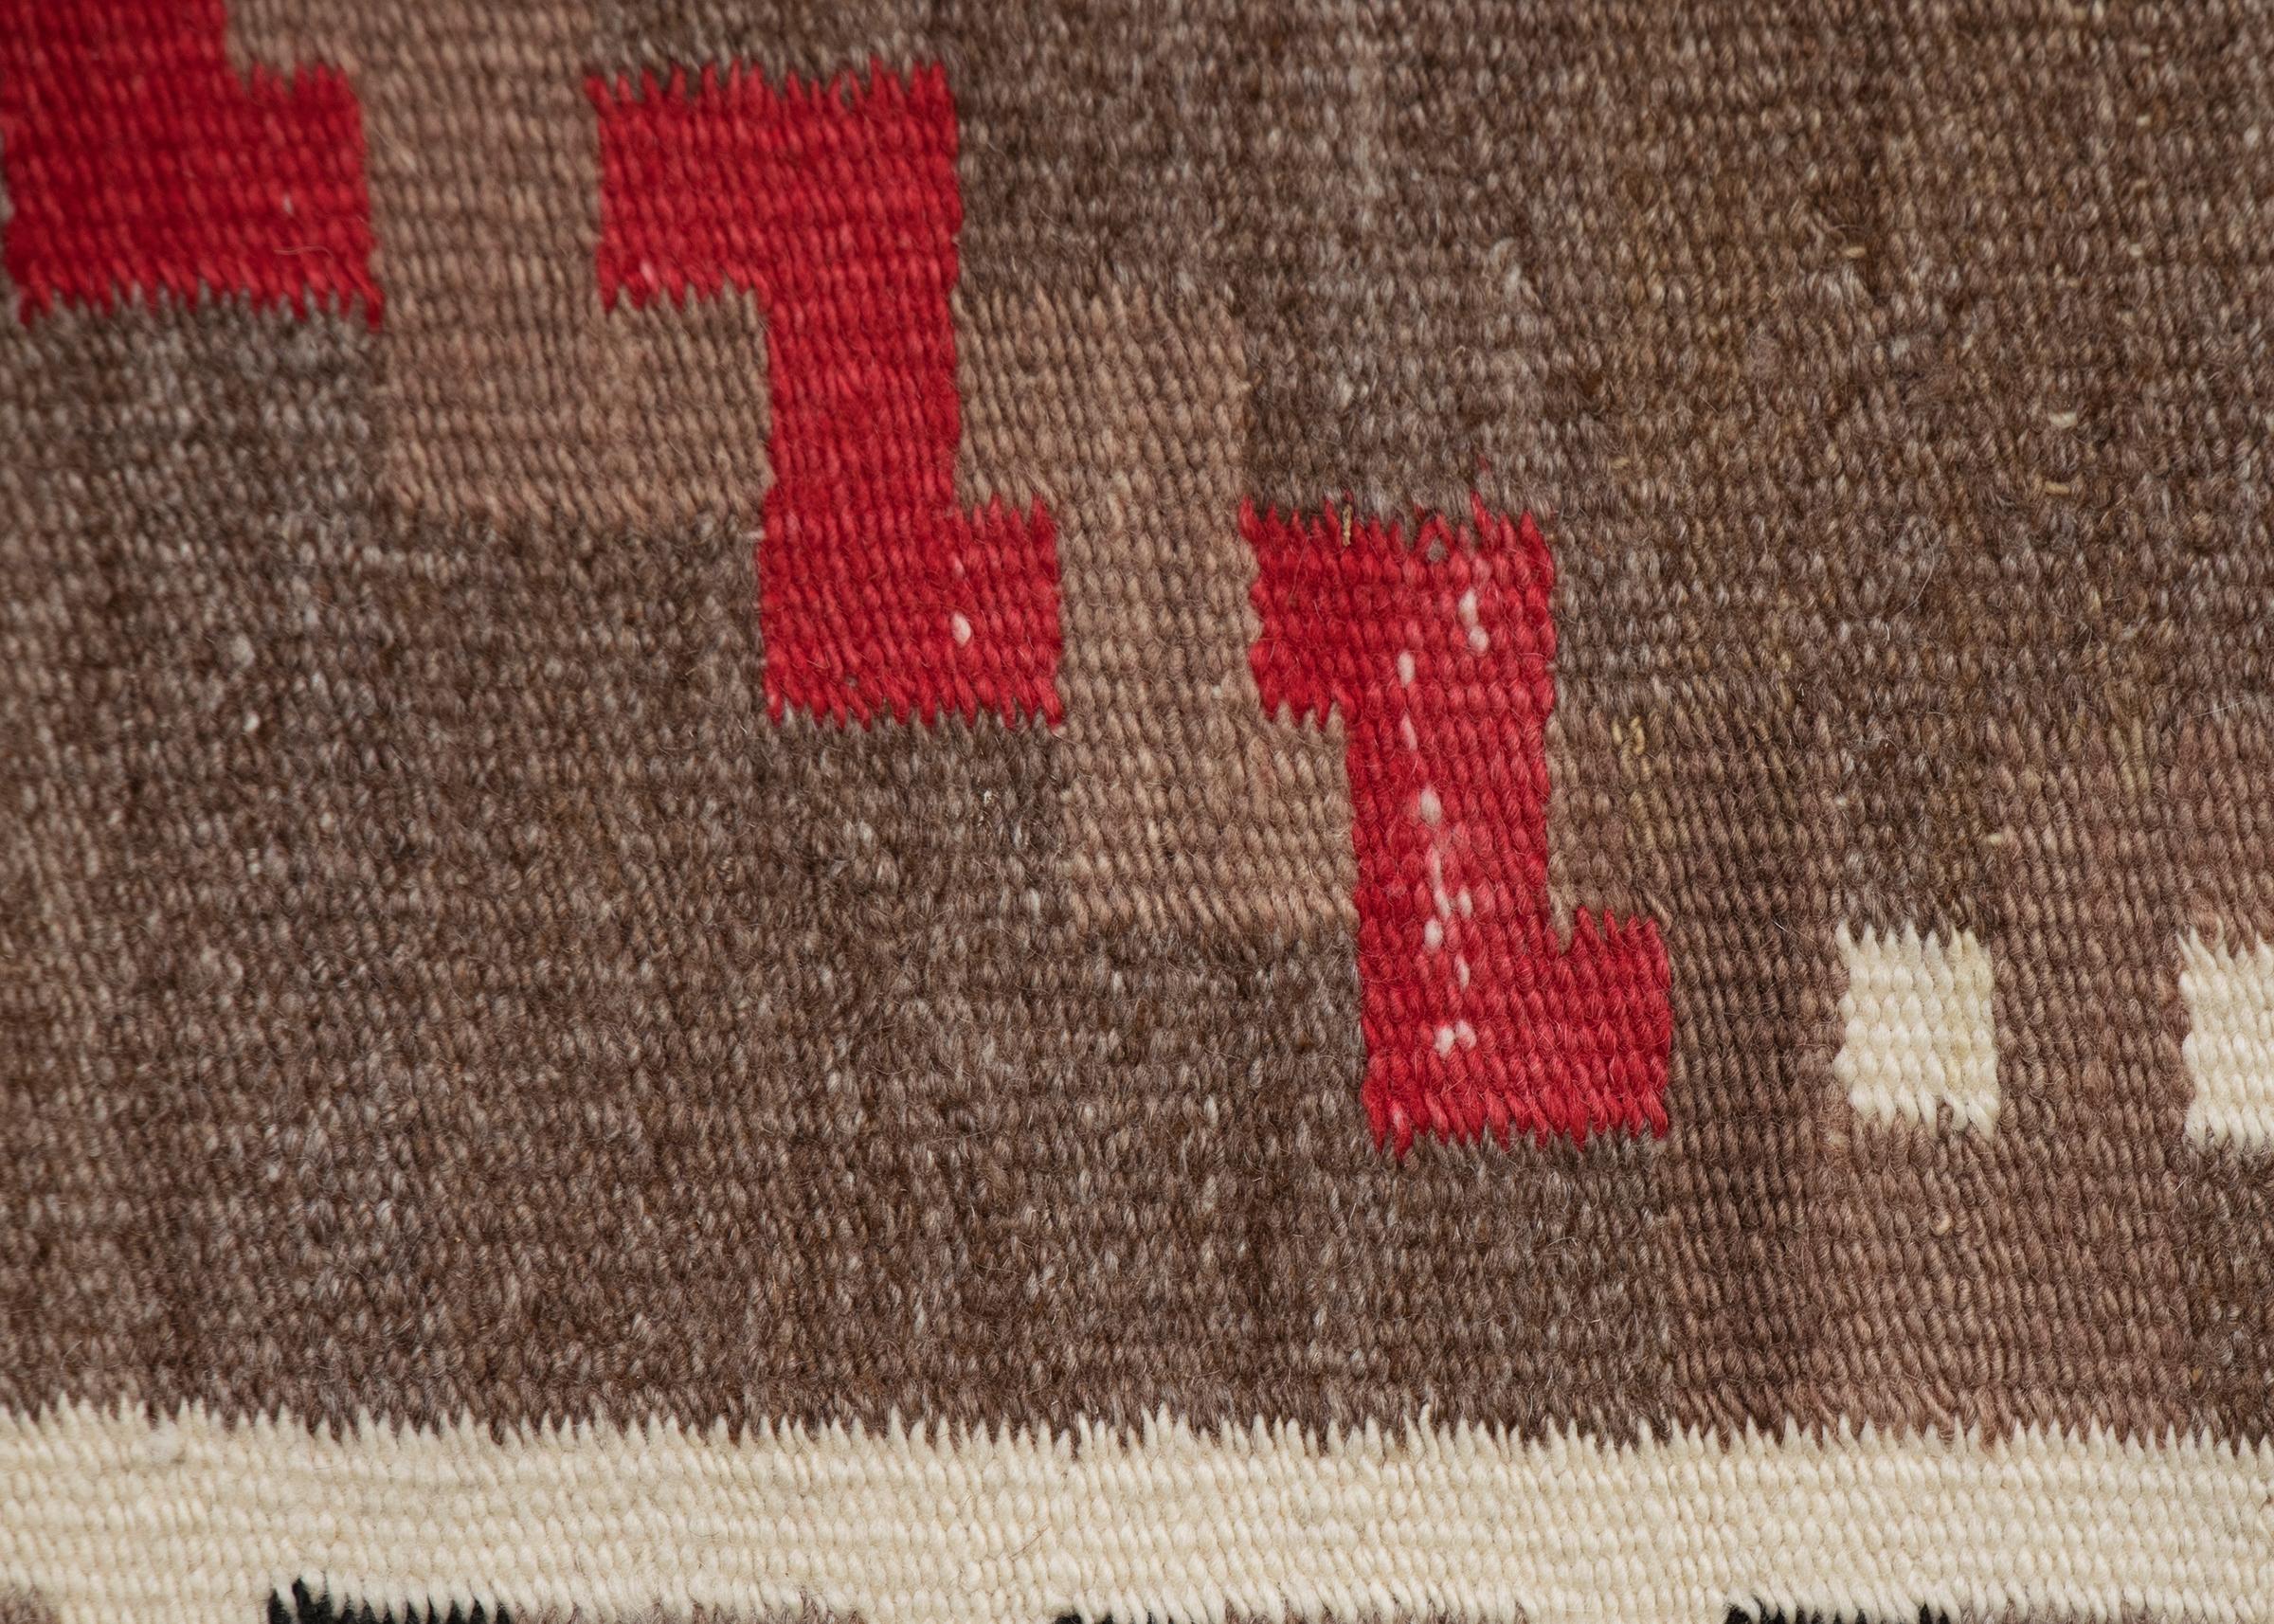 American Vintage Navajo Area Rug, 1940s, Wool, Geometric Design in Brown Black Red White